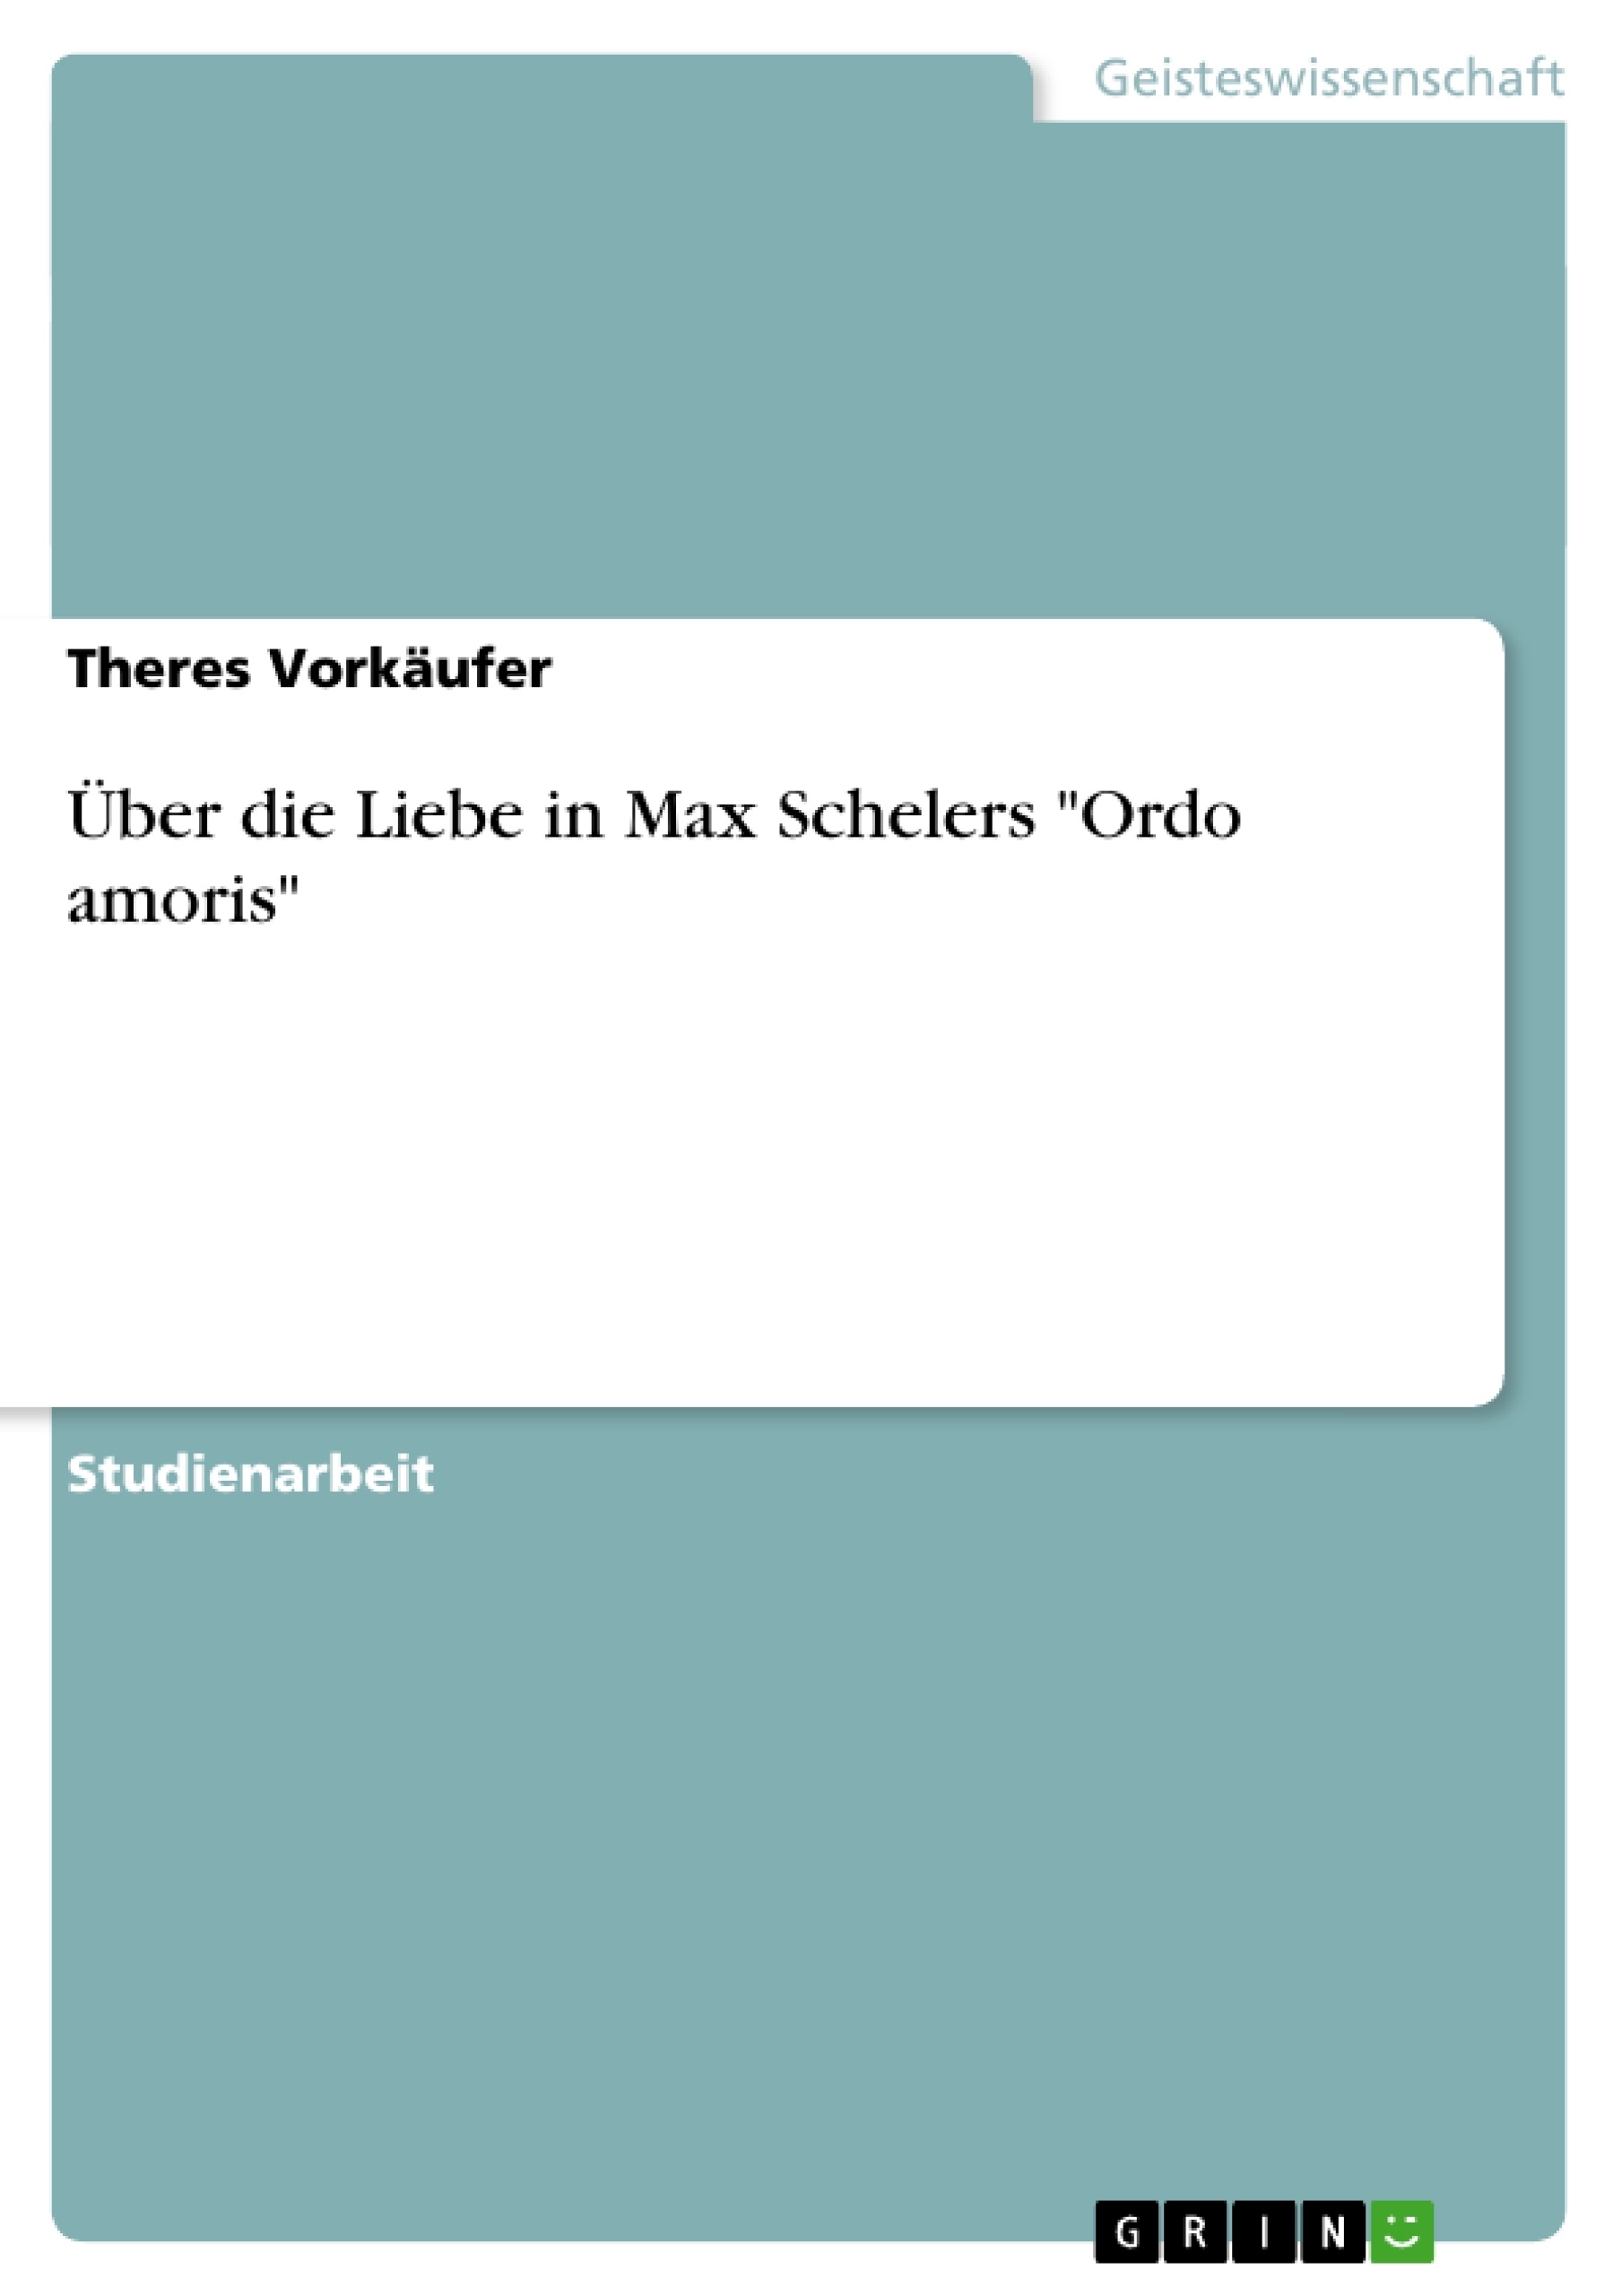 Title: Über die Liebe in Max Schelers "Ordo amoris"